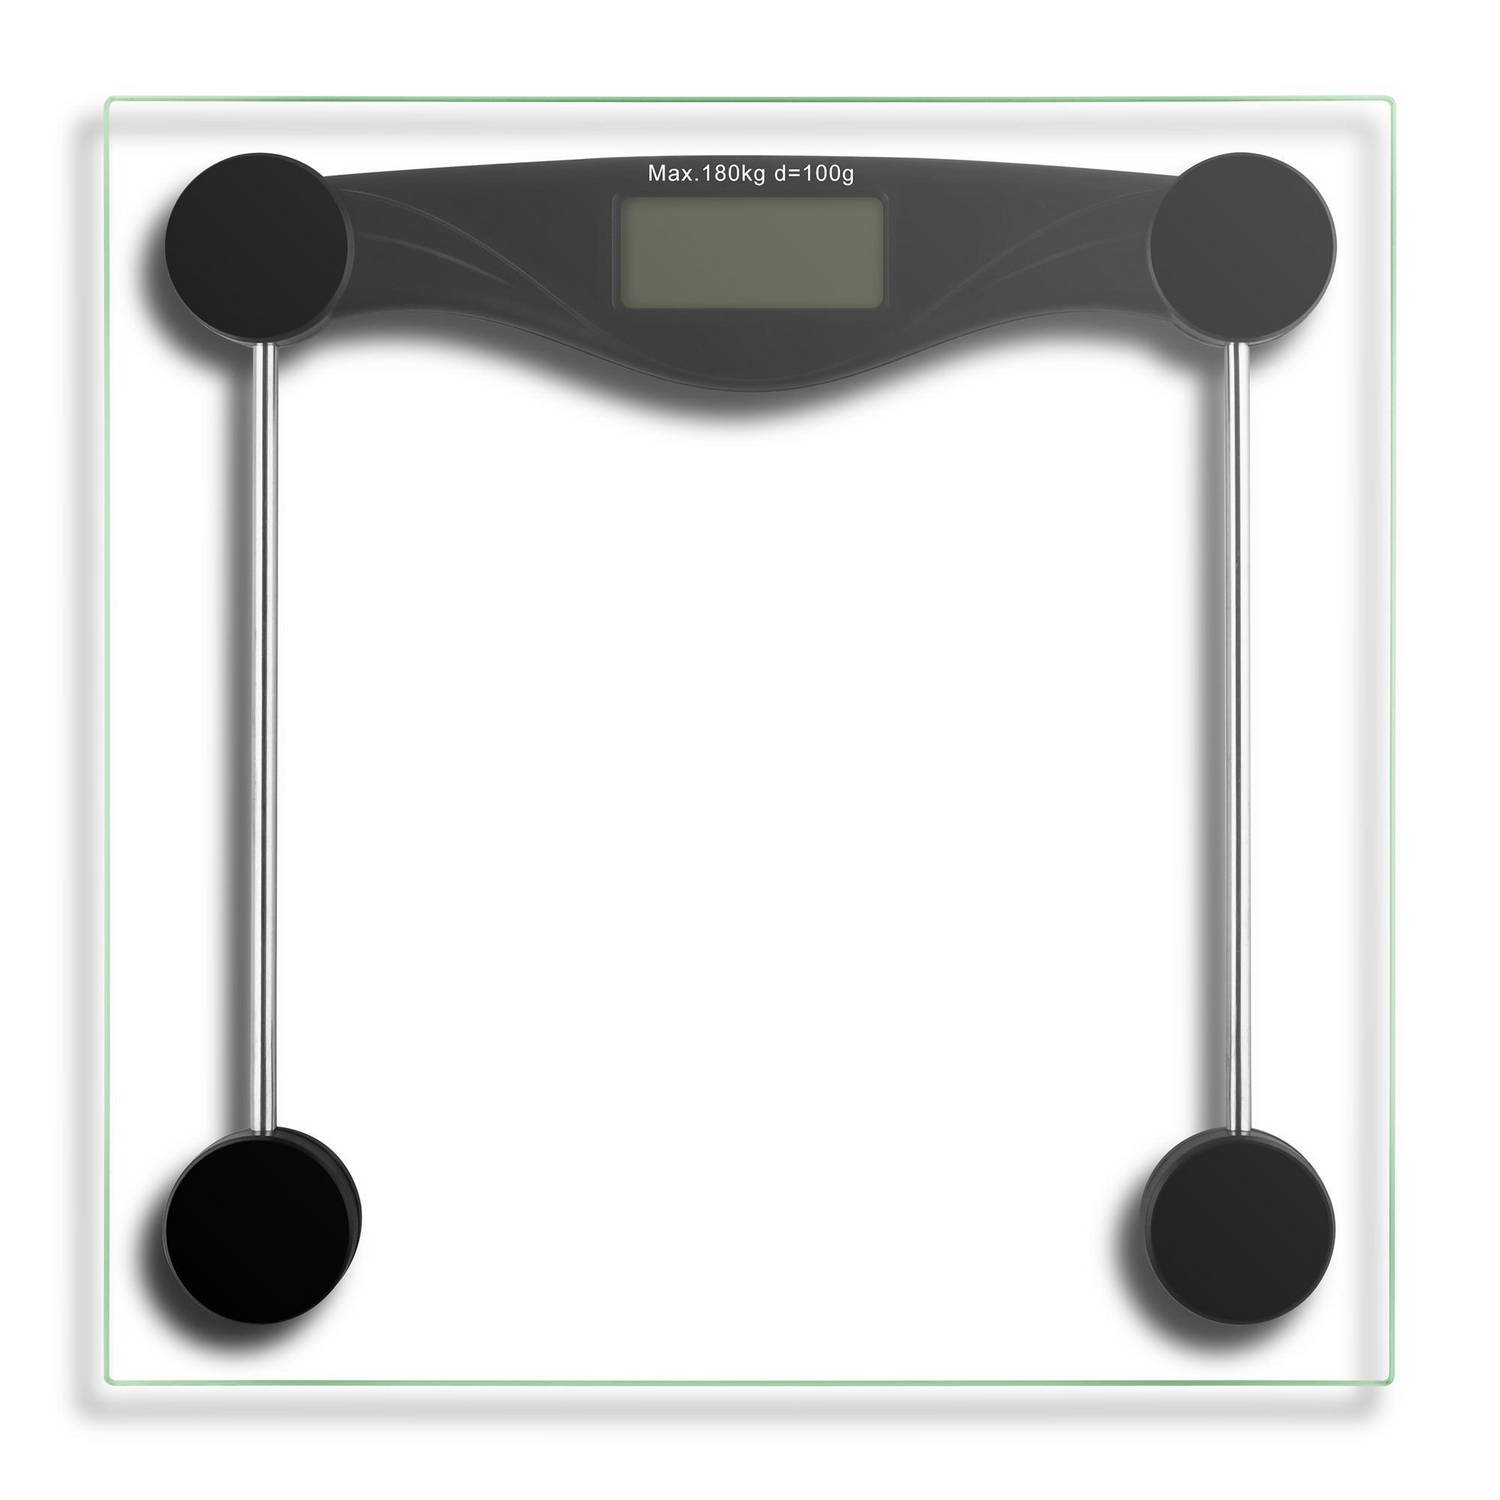 Balanza Digital con Visor LCD Peso Máximo 150kg Blanca